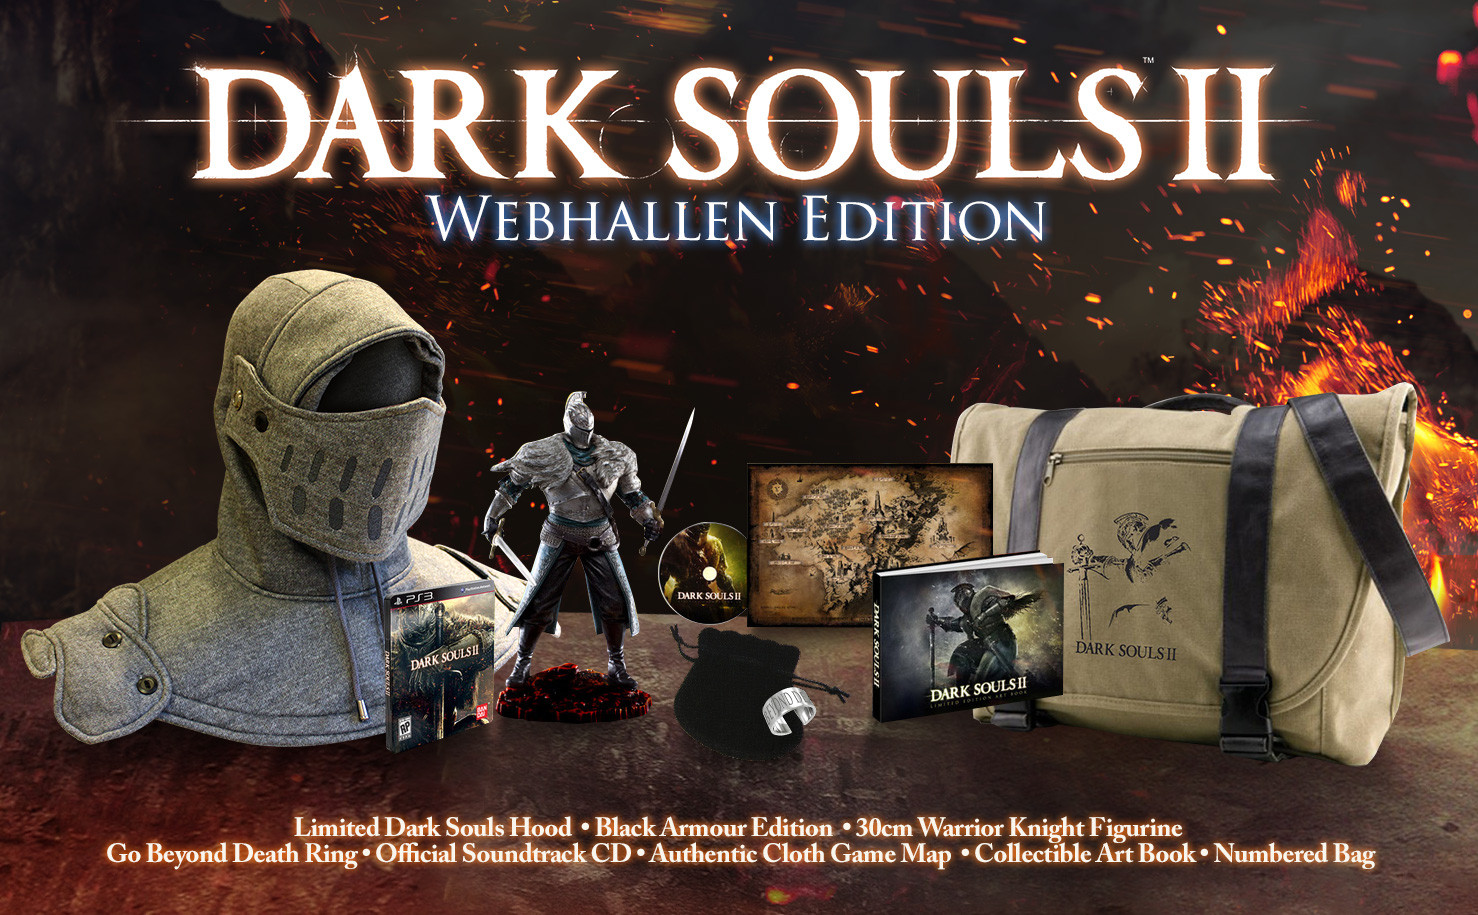 Dark Souls II: Webhallen Edition